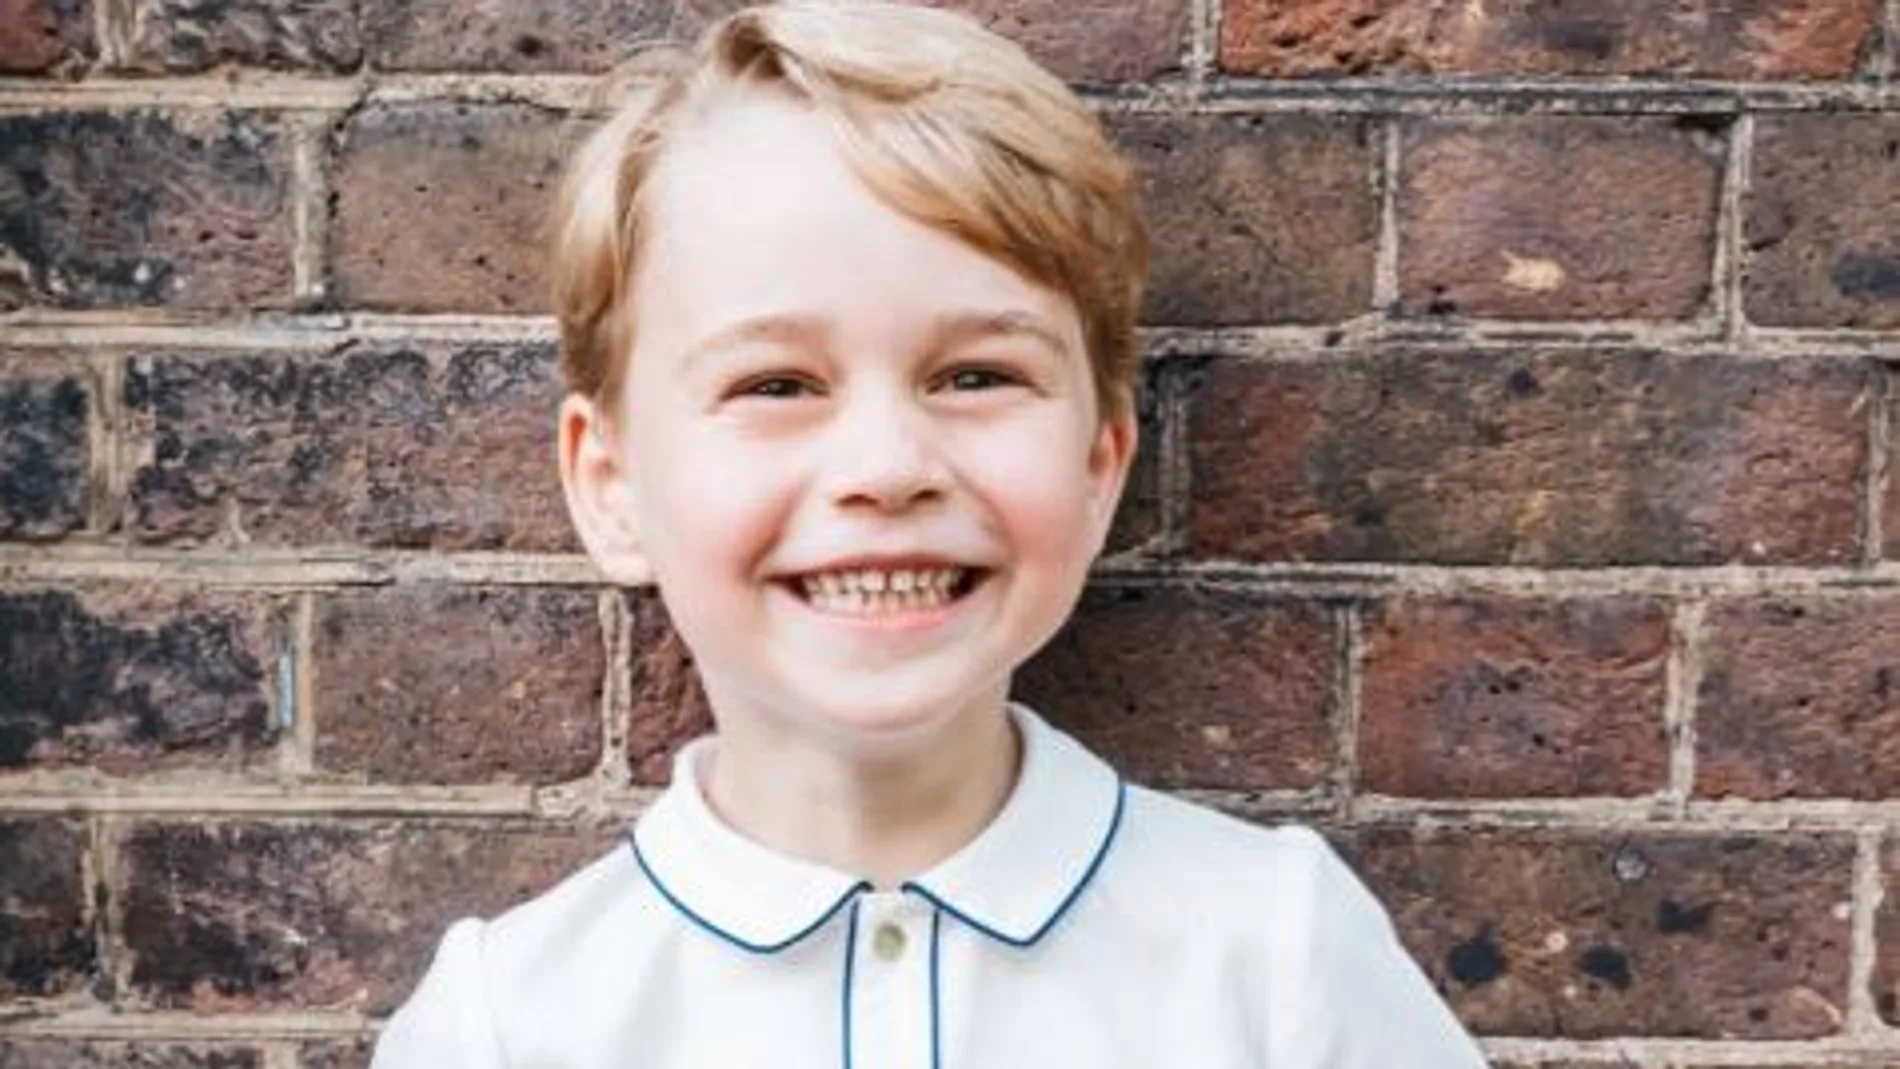 La imagen oficial del hijo mayor de los duques de Cambridge, el príncipe Jorge, para celebrar su quinto cumpleaños